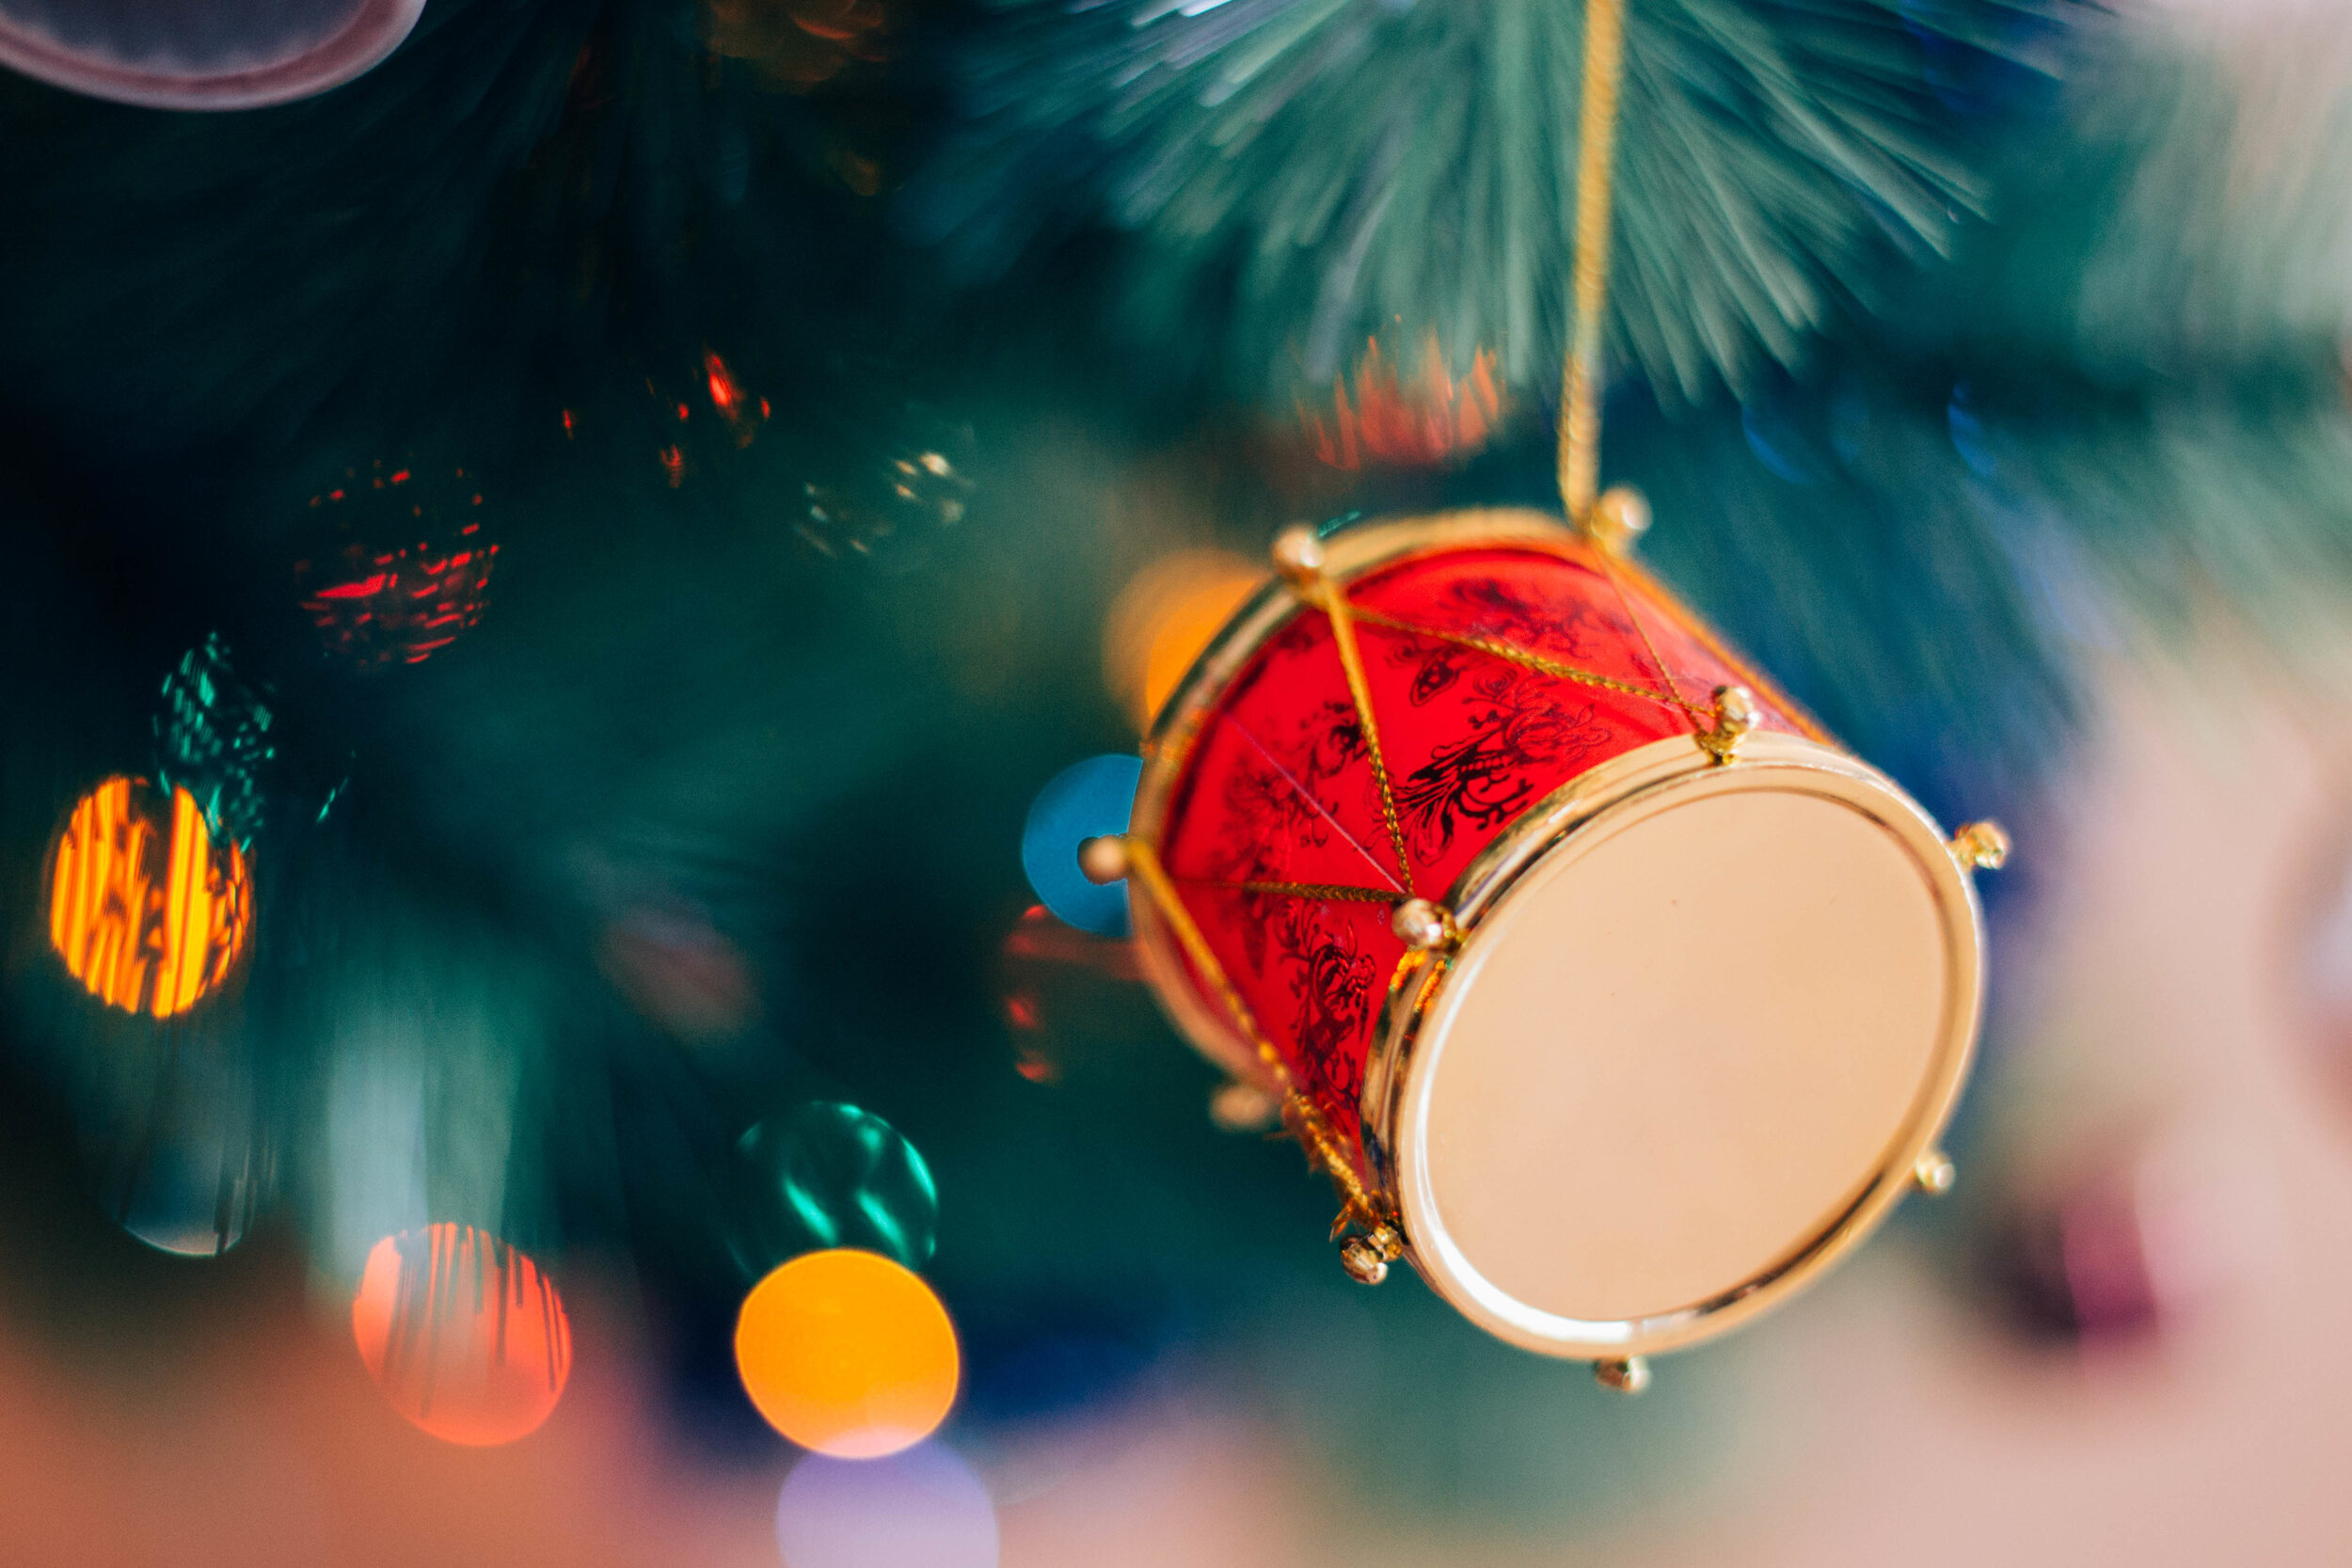 Kalėdinis „Little Drummer Boy“ labirintas: nuo merginų choralo iki David Bowie, Bing Crosby ir… pankroko